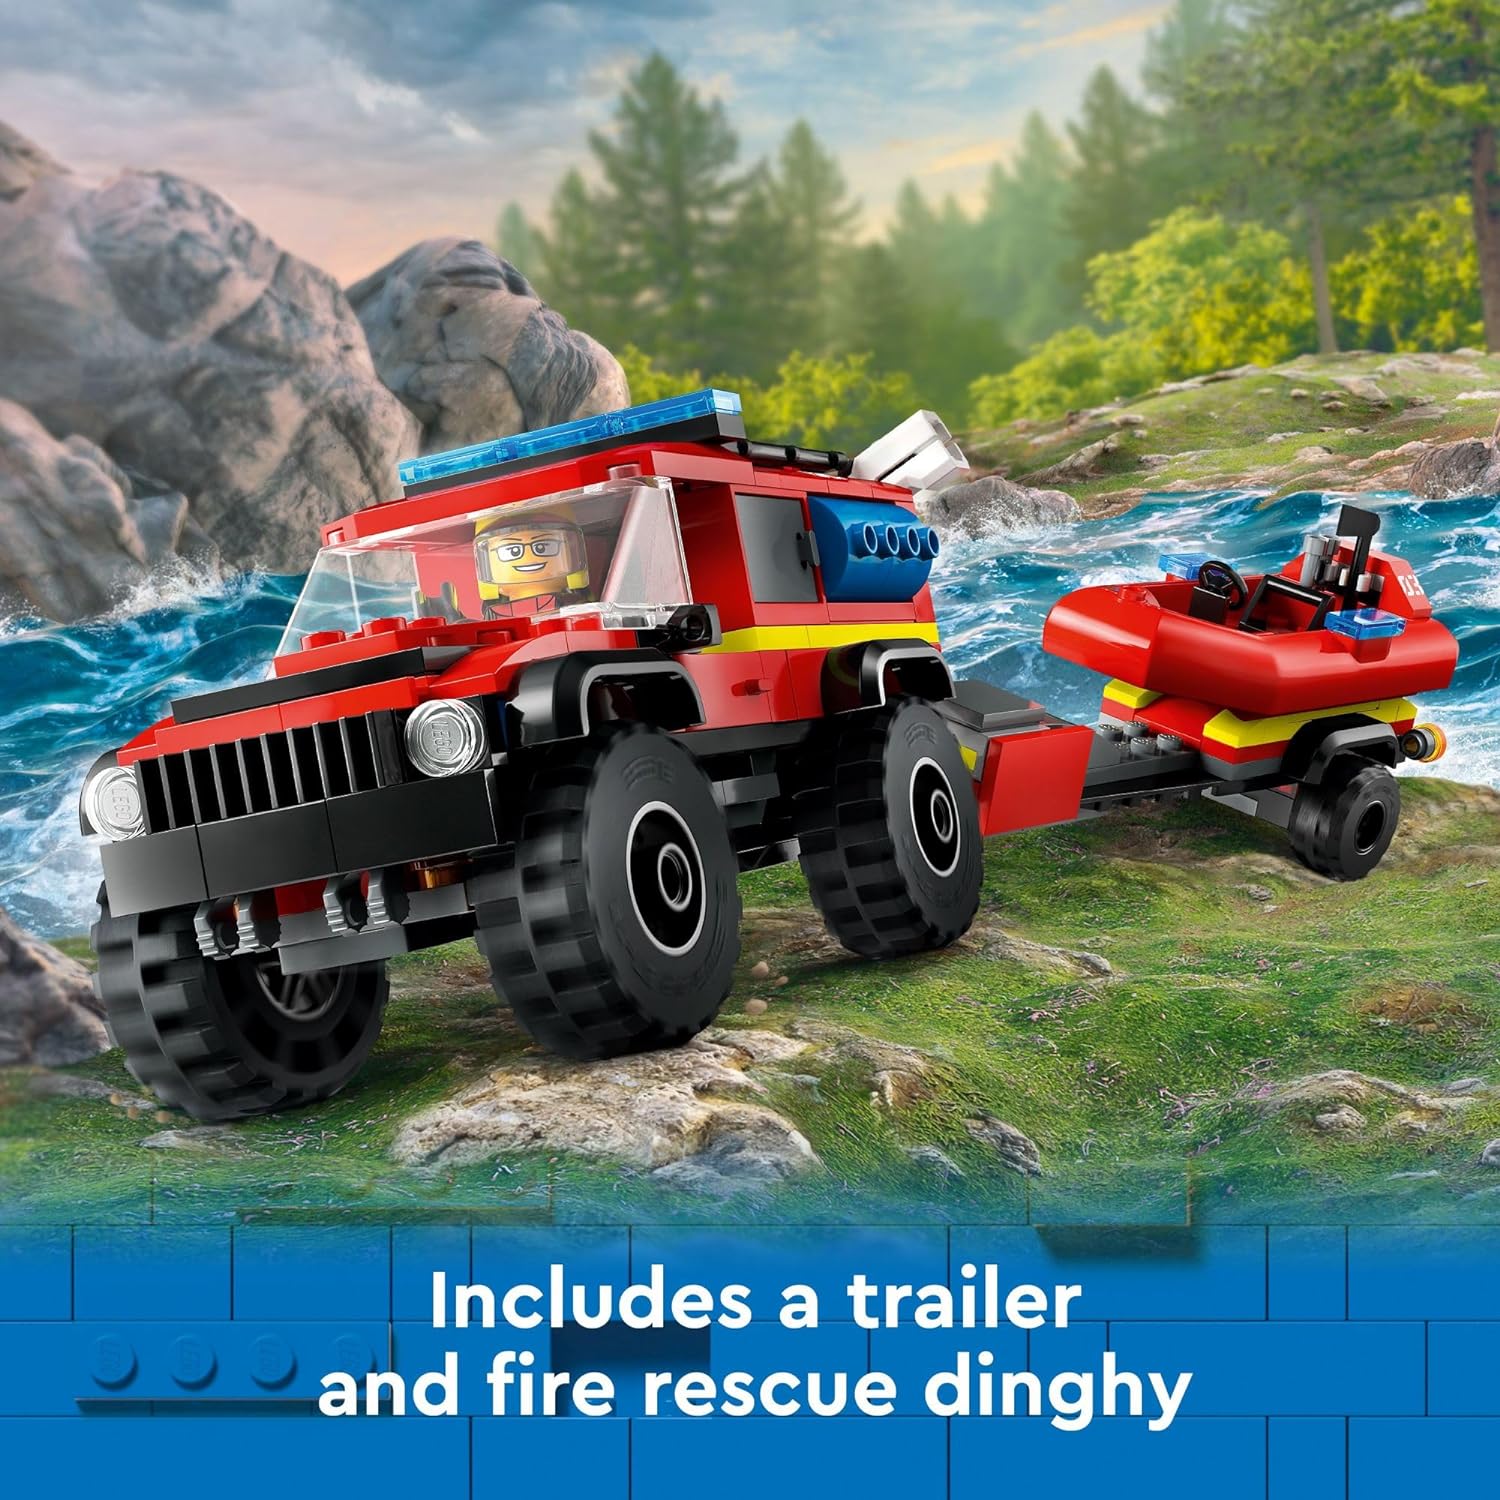 ليجو 60412 سيتي 4×4 شاحنة إطفاء مع لعبة قارب إنقاذ للأطفال من سن 5 سنوات فما فوق، لعبة تظاهر للأولاد والبنات مع لعبة شاحنة ومقطورة وزورق وخيمة، بالإضافة إلى 1 تخييم و2 شخصيات مصغرة لرجال الإطفاء.